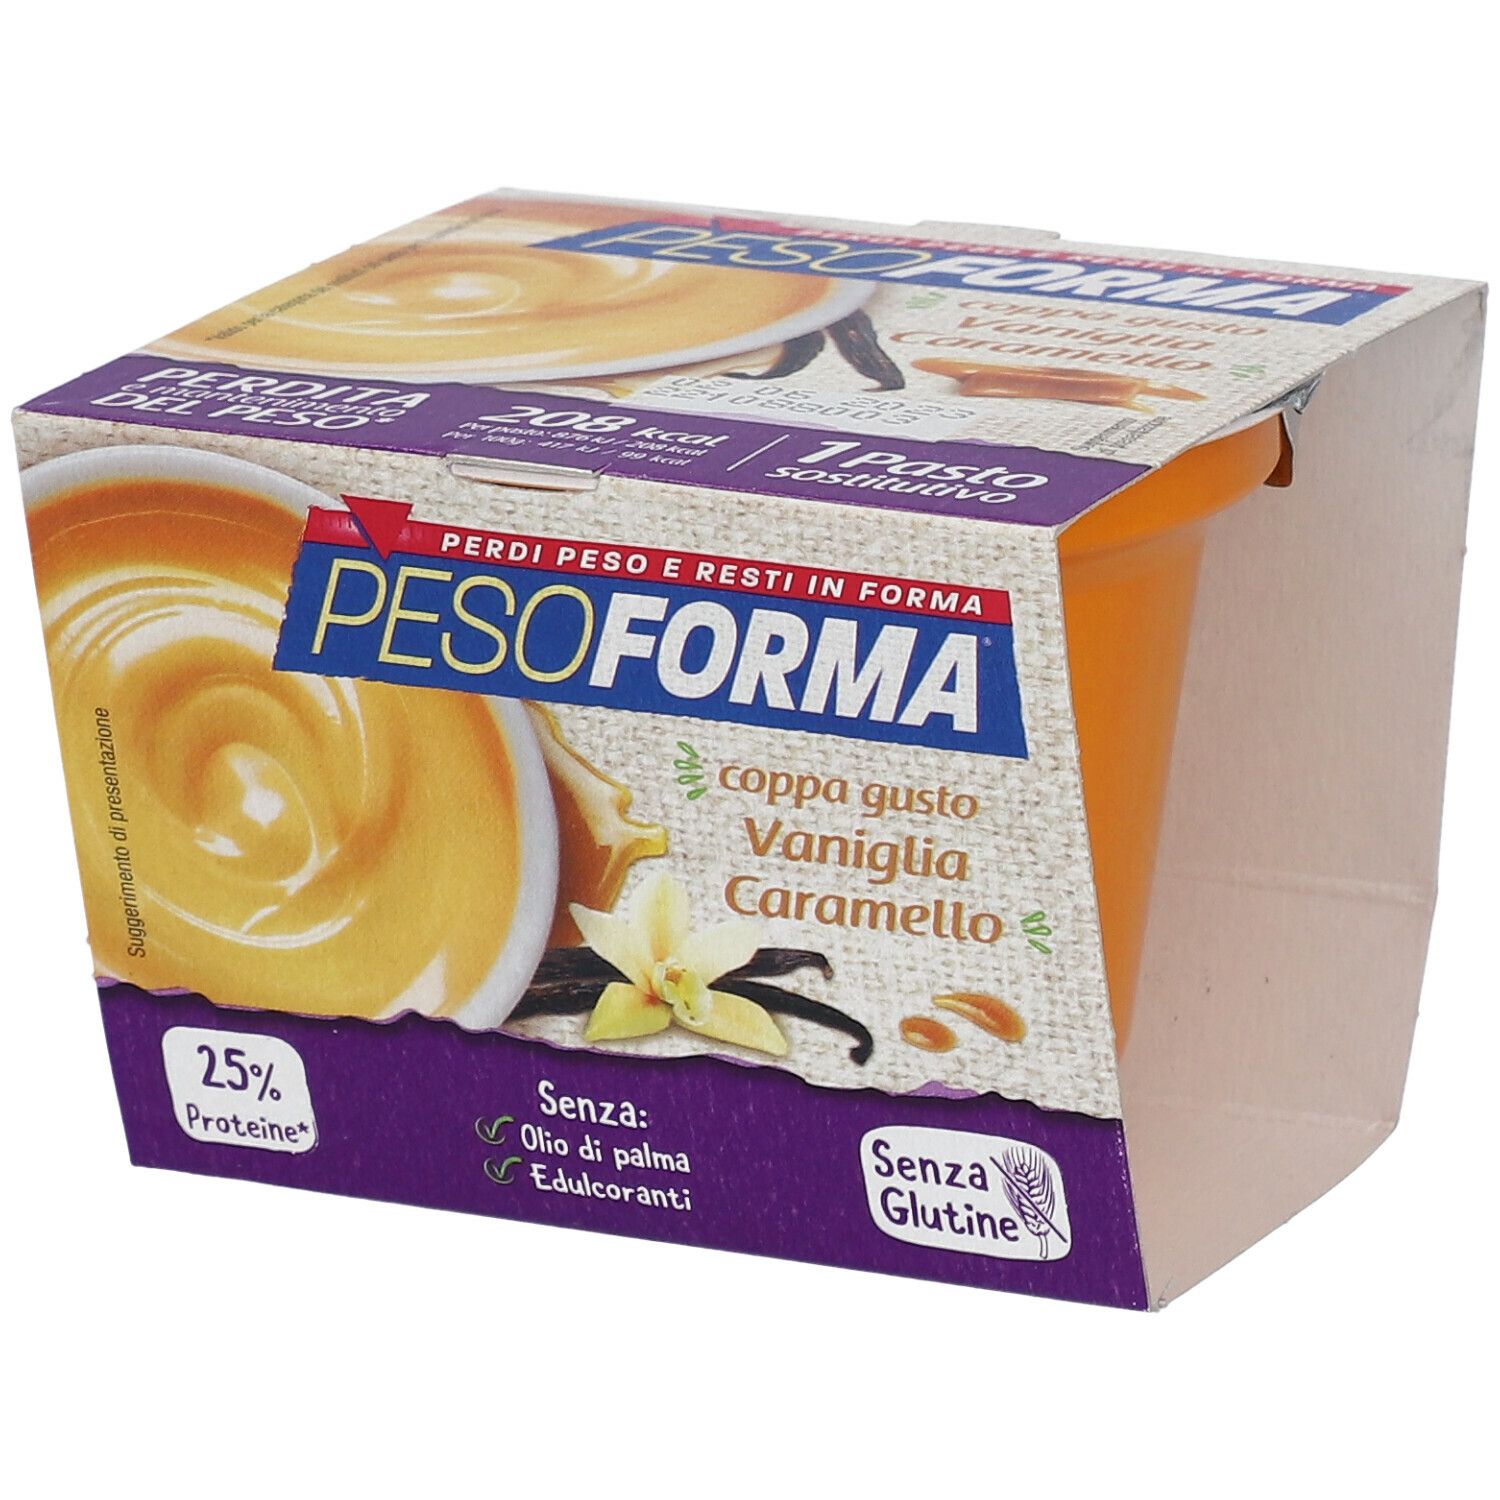 PESOFORMA® Coppa Gusto Vaniglia e Caramello